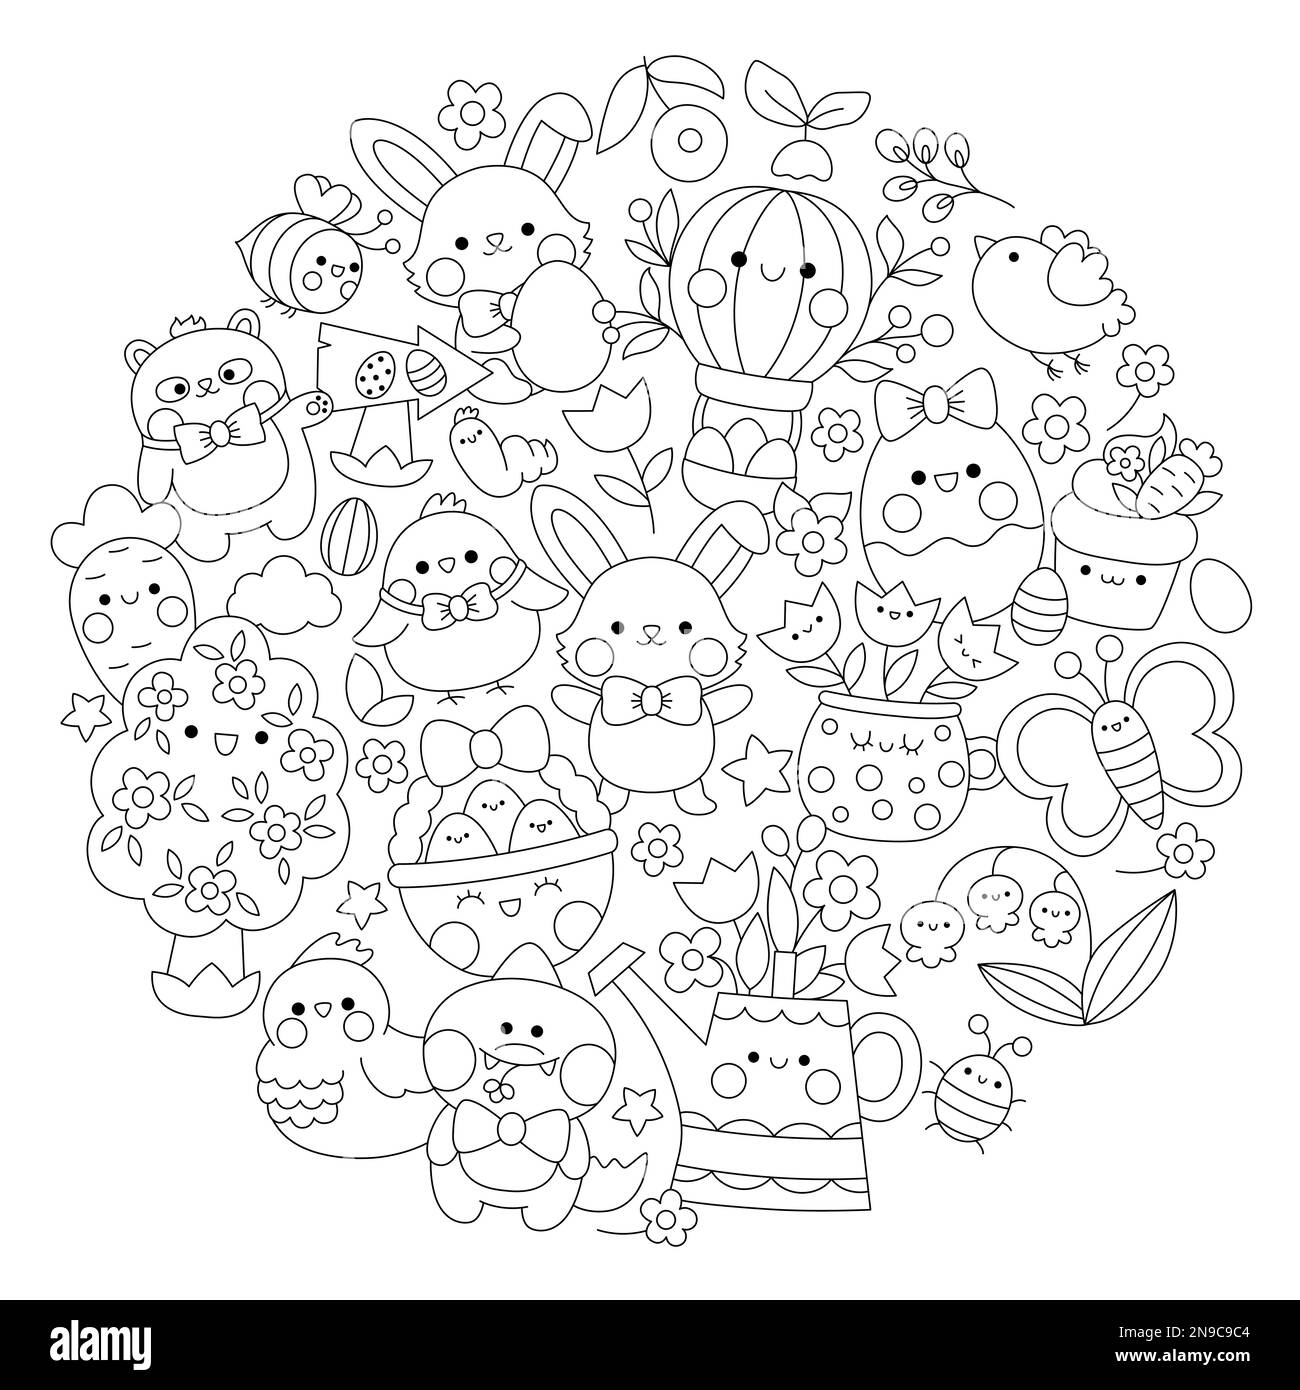 Vector Easter – runde Malseite für Kinder mit niedlichen Kawaii-Figuren. Schwarzweißes Weihnachtsfoto mit lustigem Häschen, Mädels, Ani Stock Vektor